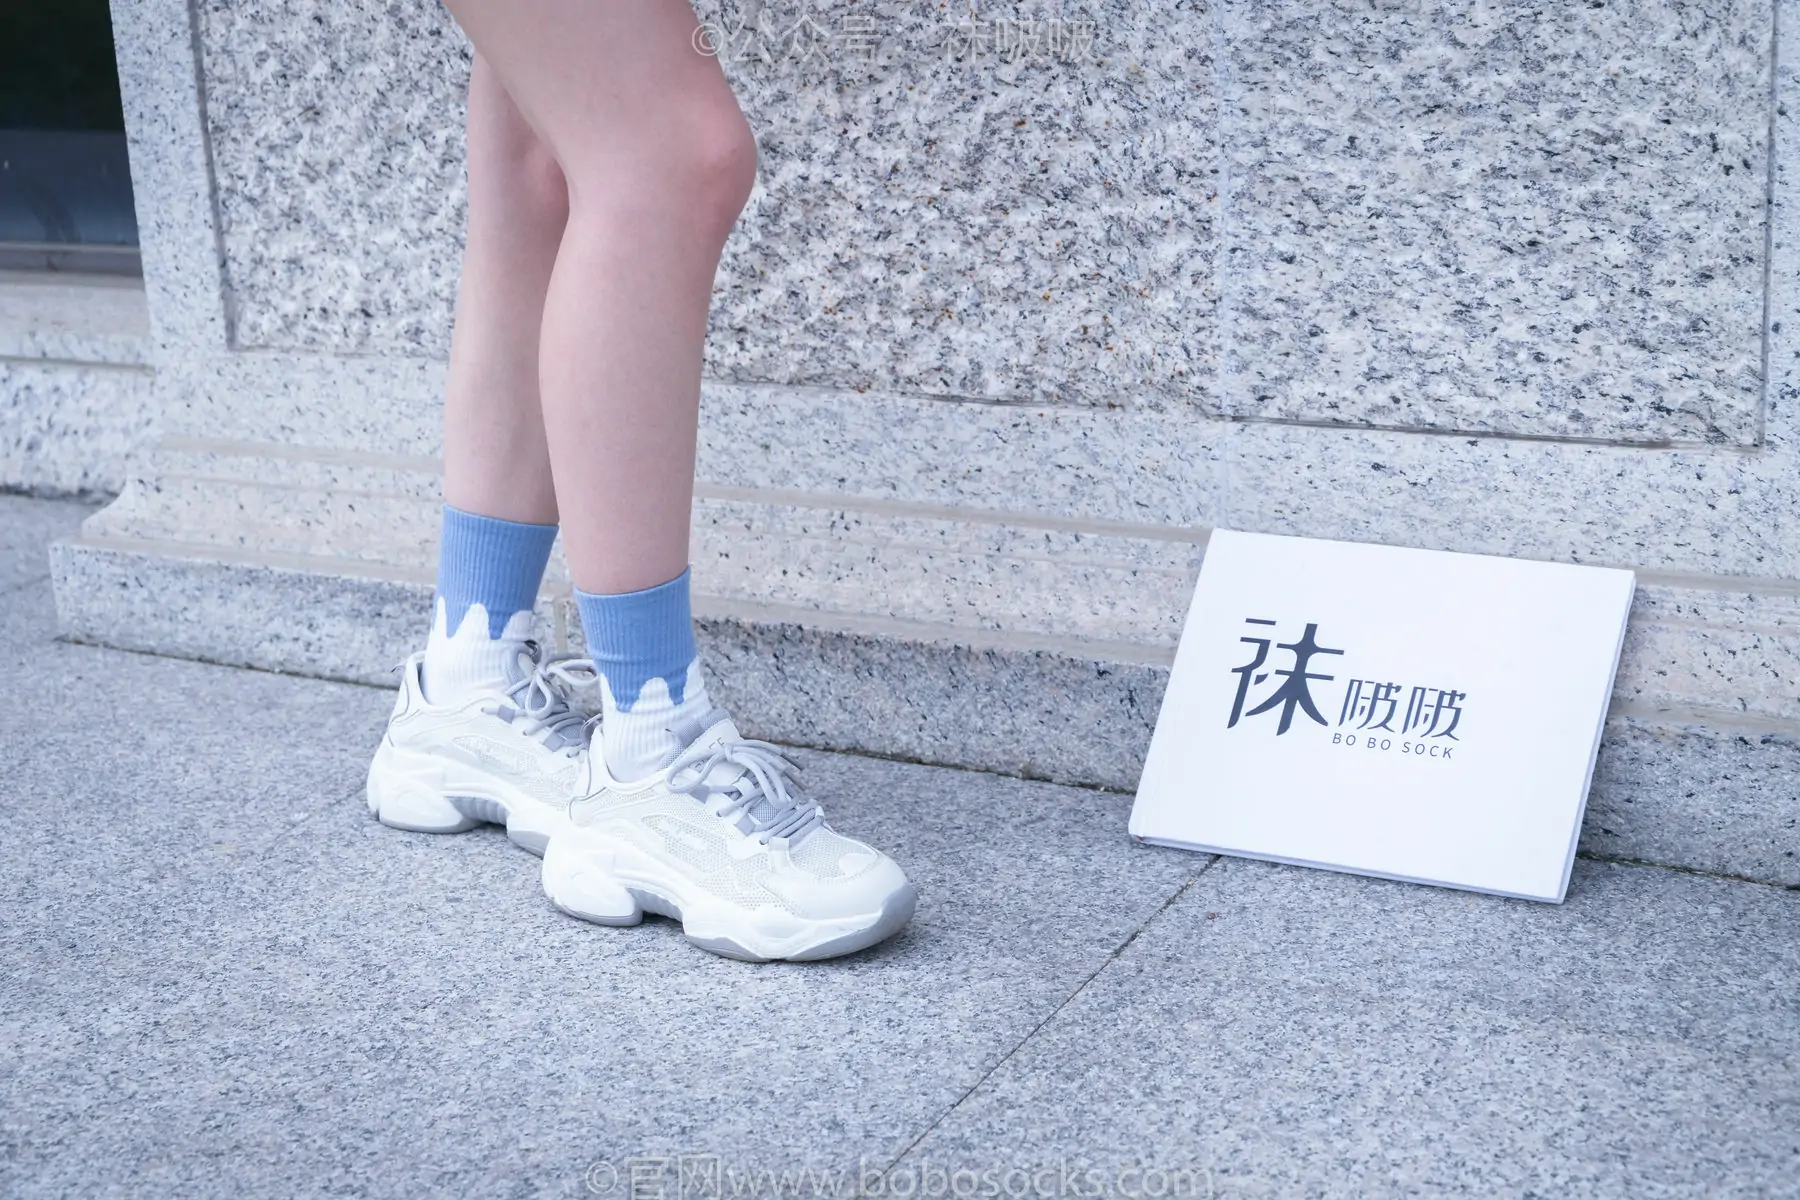 BoBoSocks袜啵啵 No.028 小米-运动鞋、白棉袜、裸足 